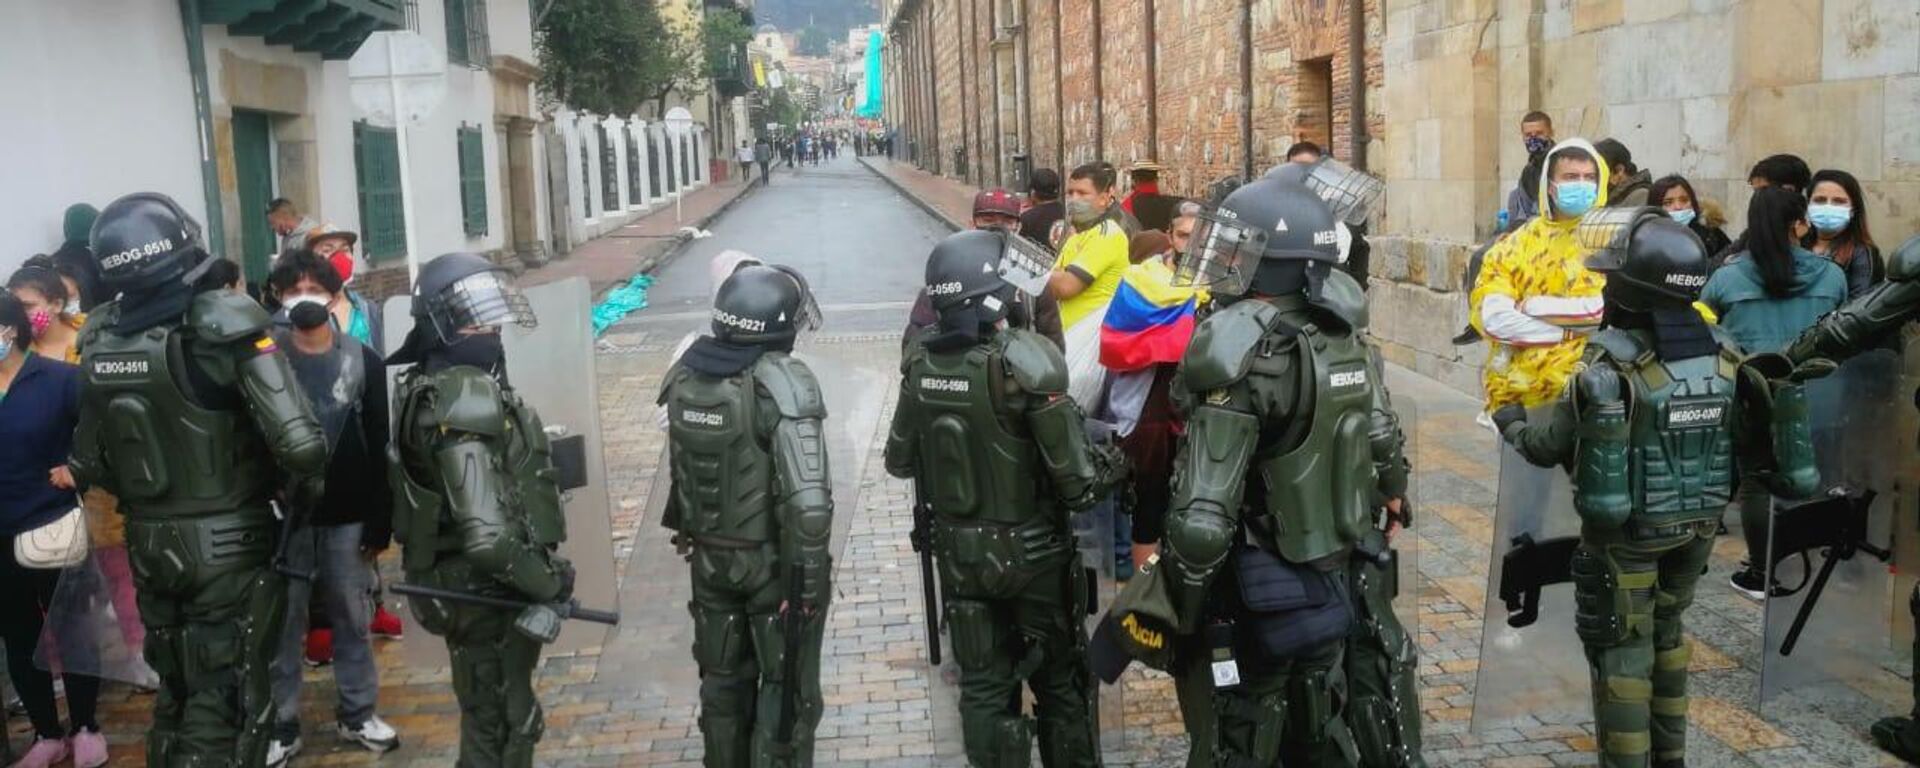 La Policía colombiana se desplegó en la jornada de protestas - Sputnik Mundo, 1920, 10.05.2021